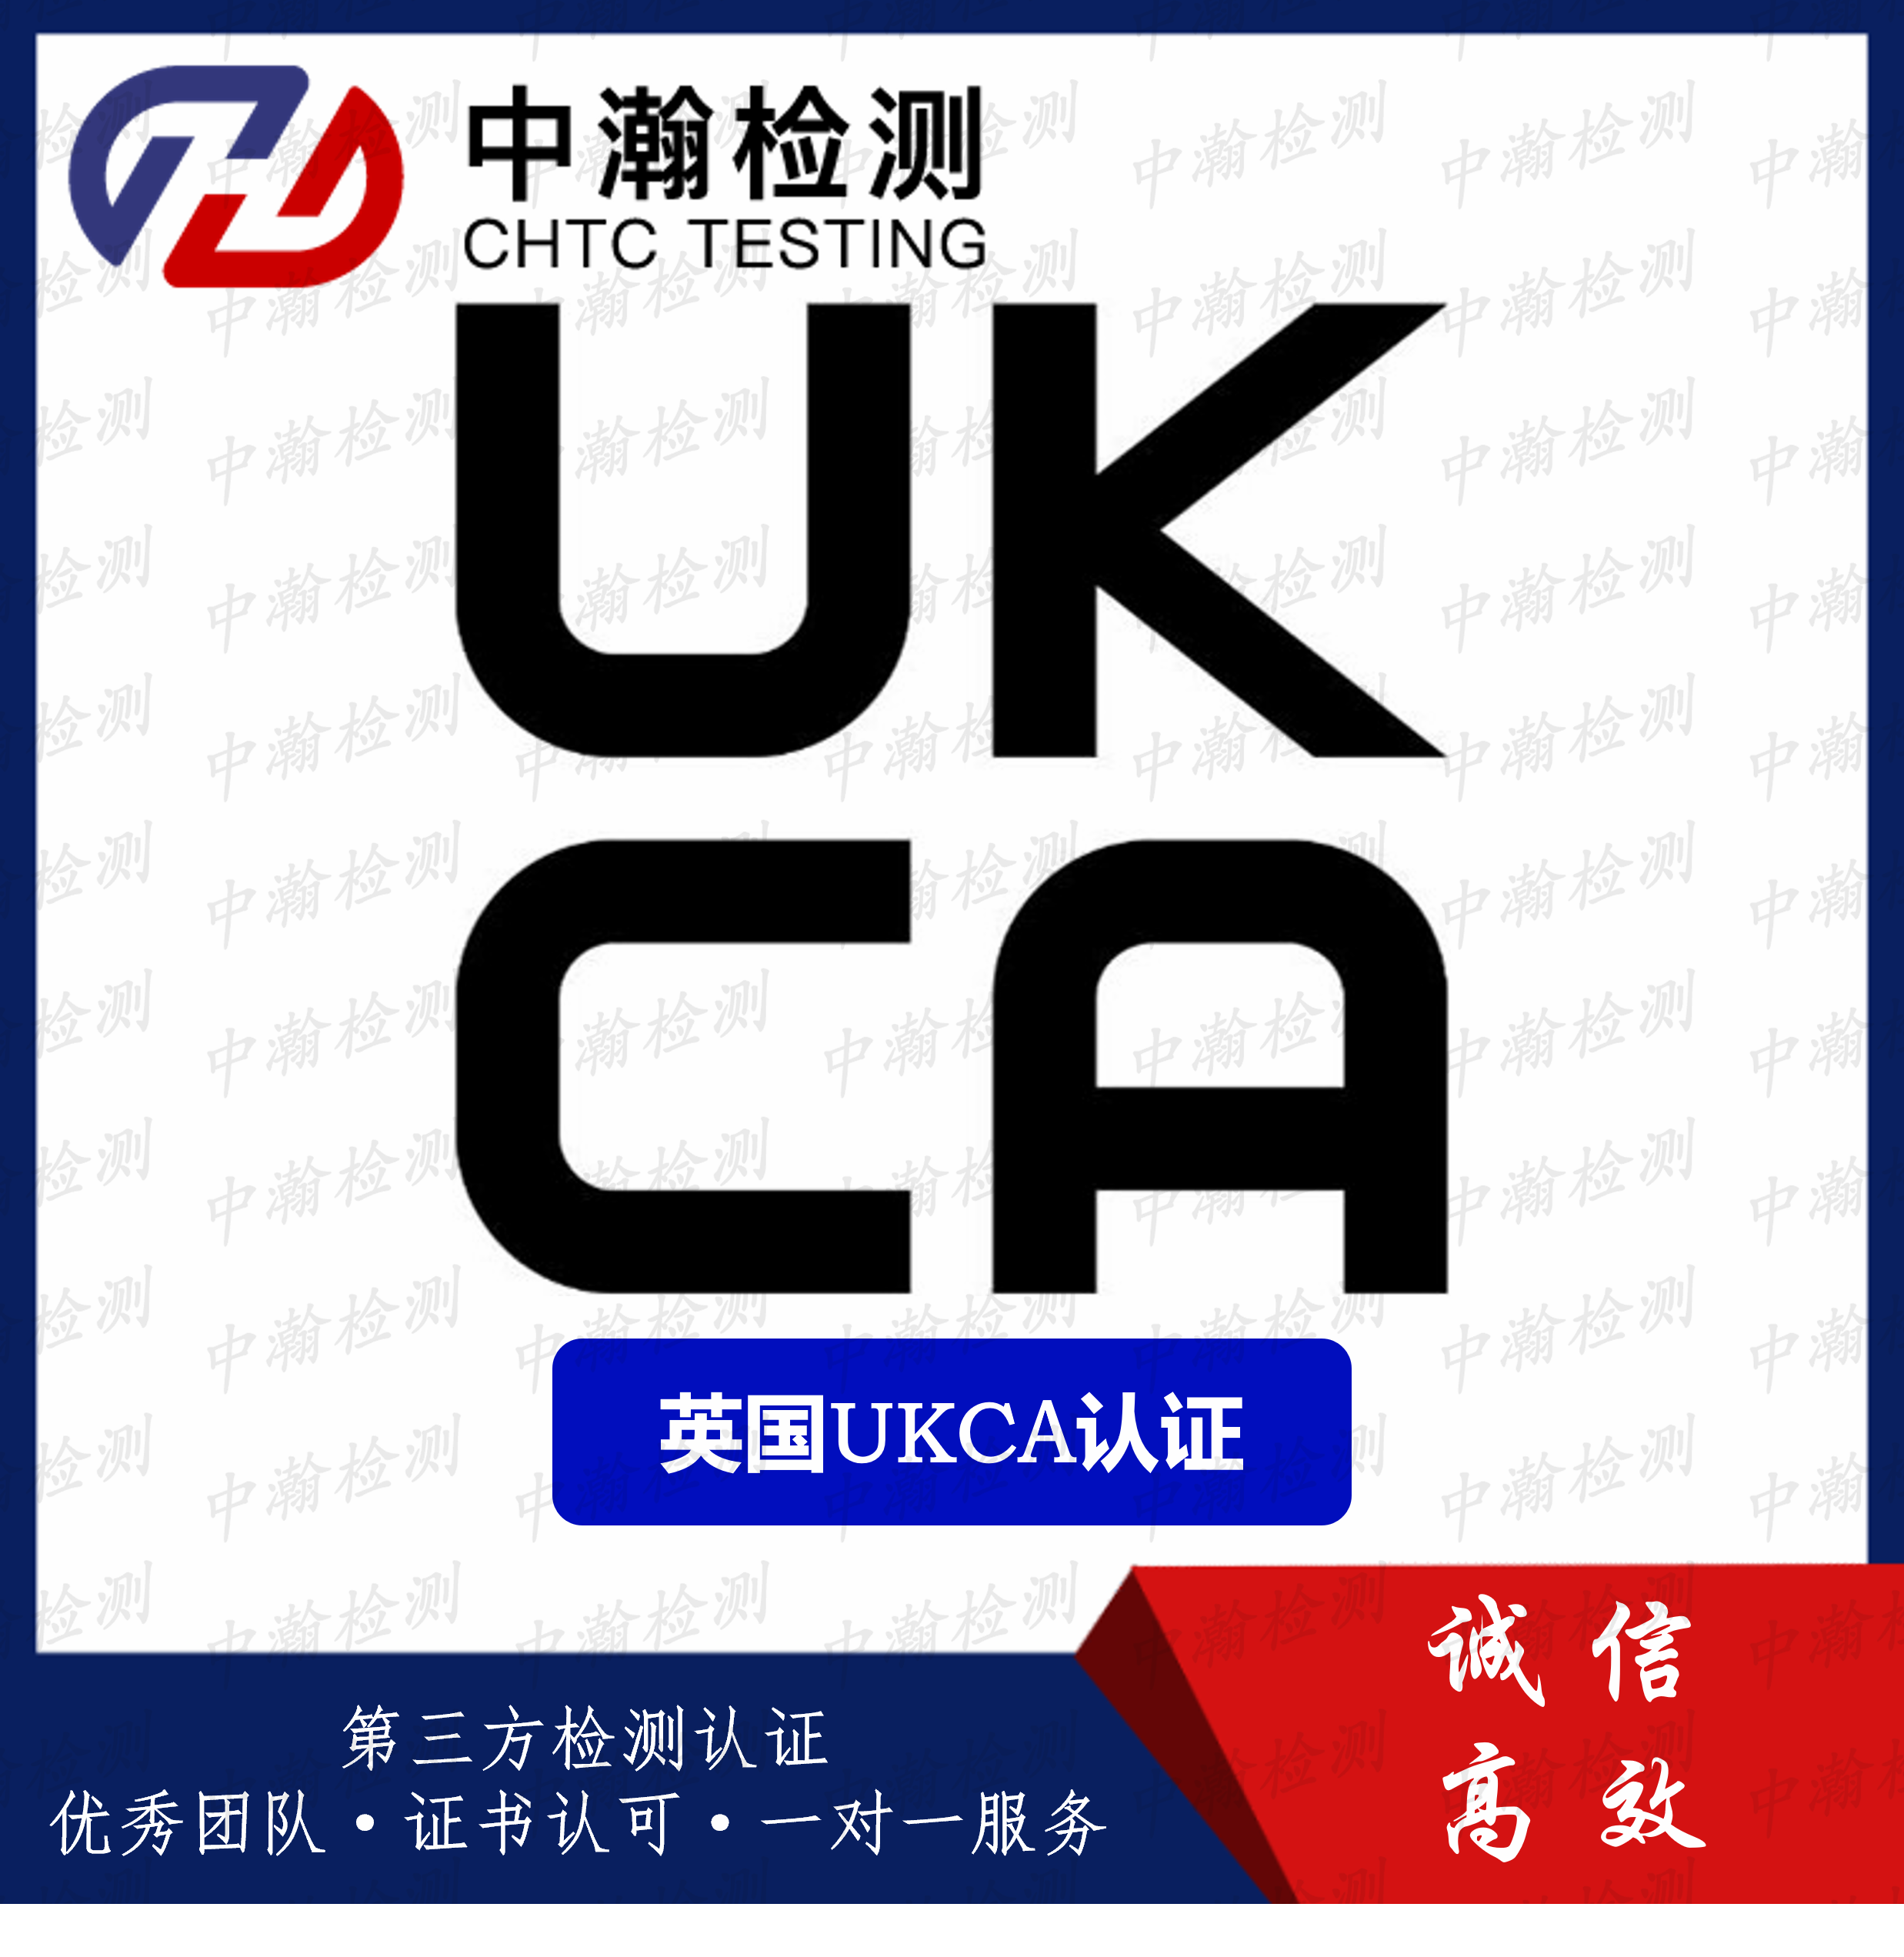 英国UKCA认证知识普及 申请流程